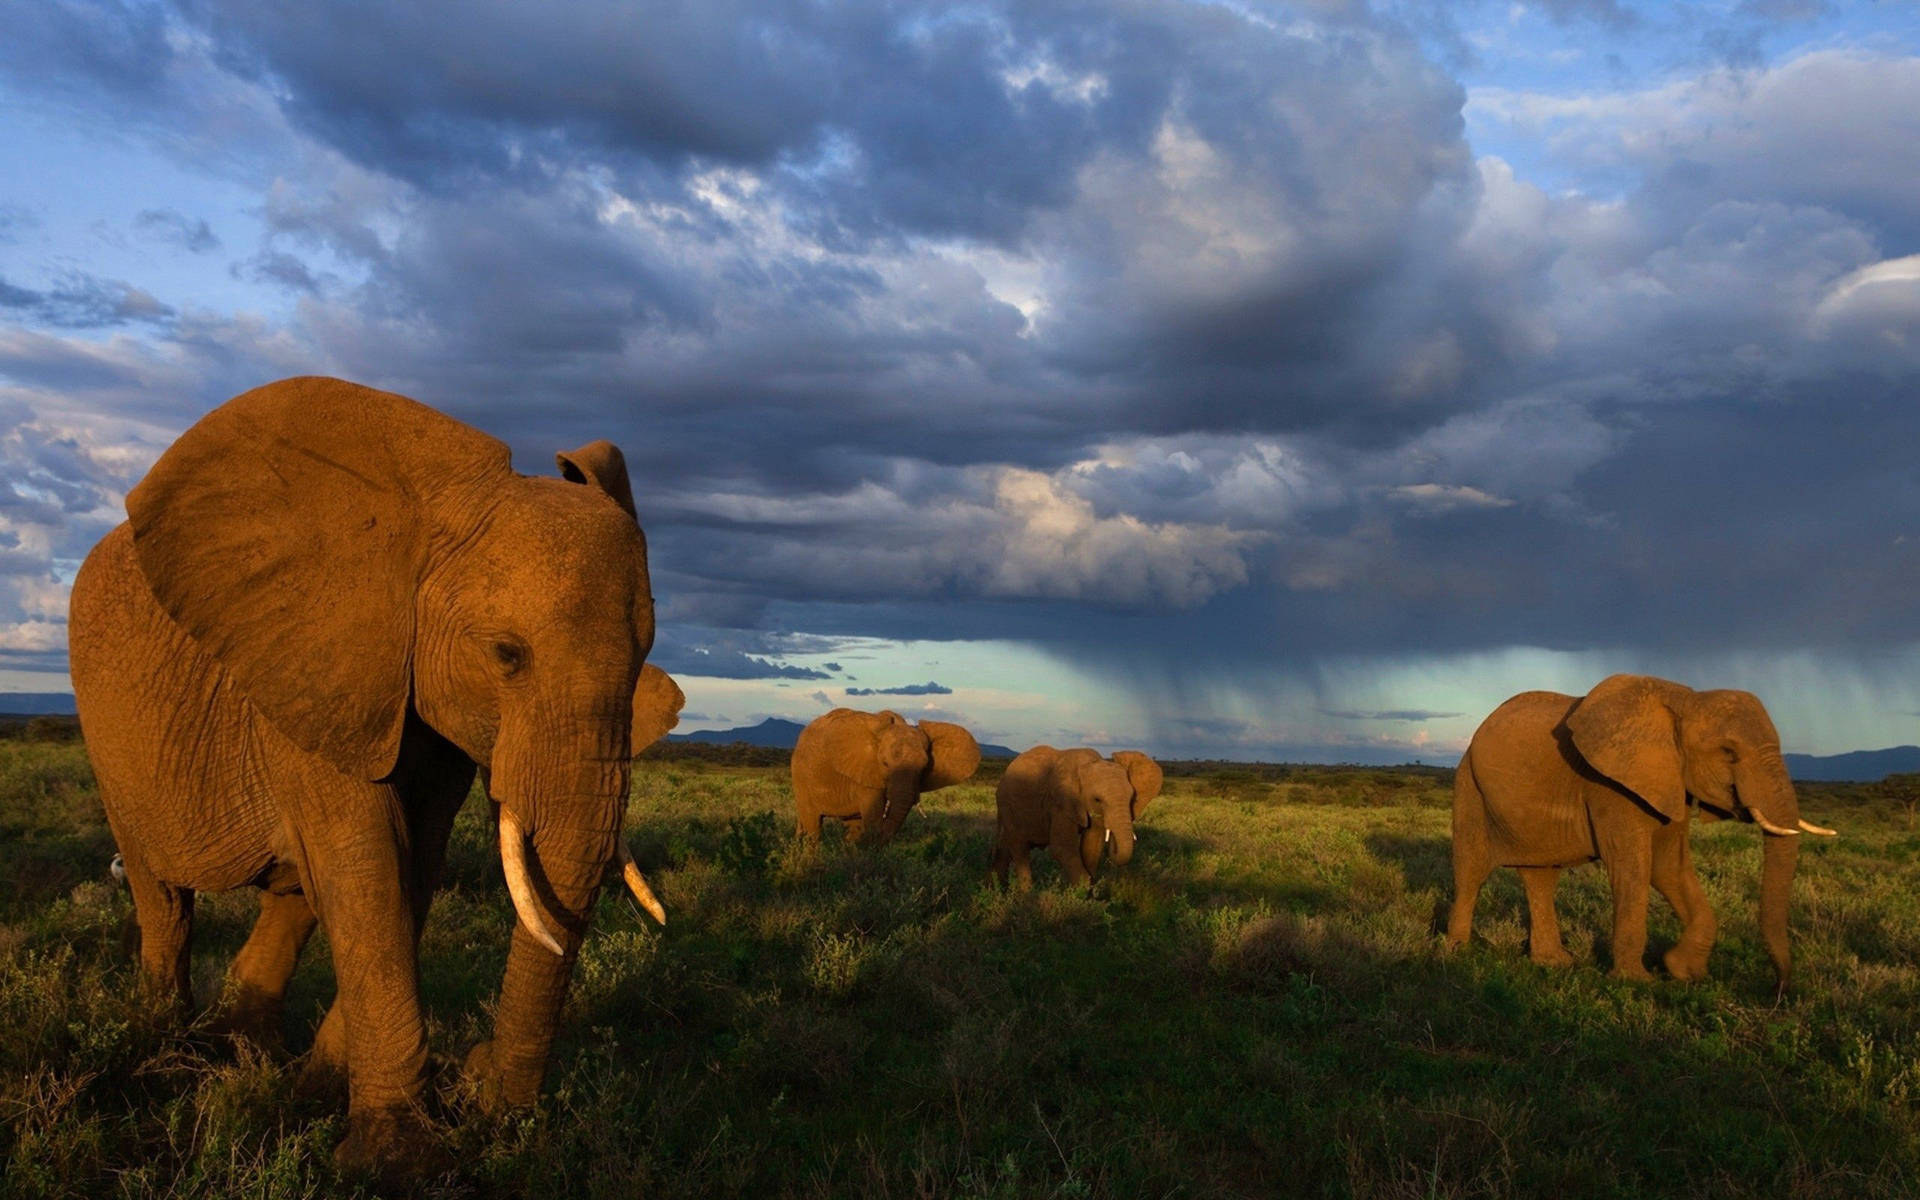 A herd of elephants walking through a dark cloud-filled sky Wallpaper